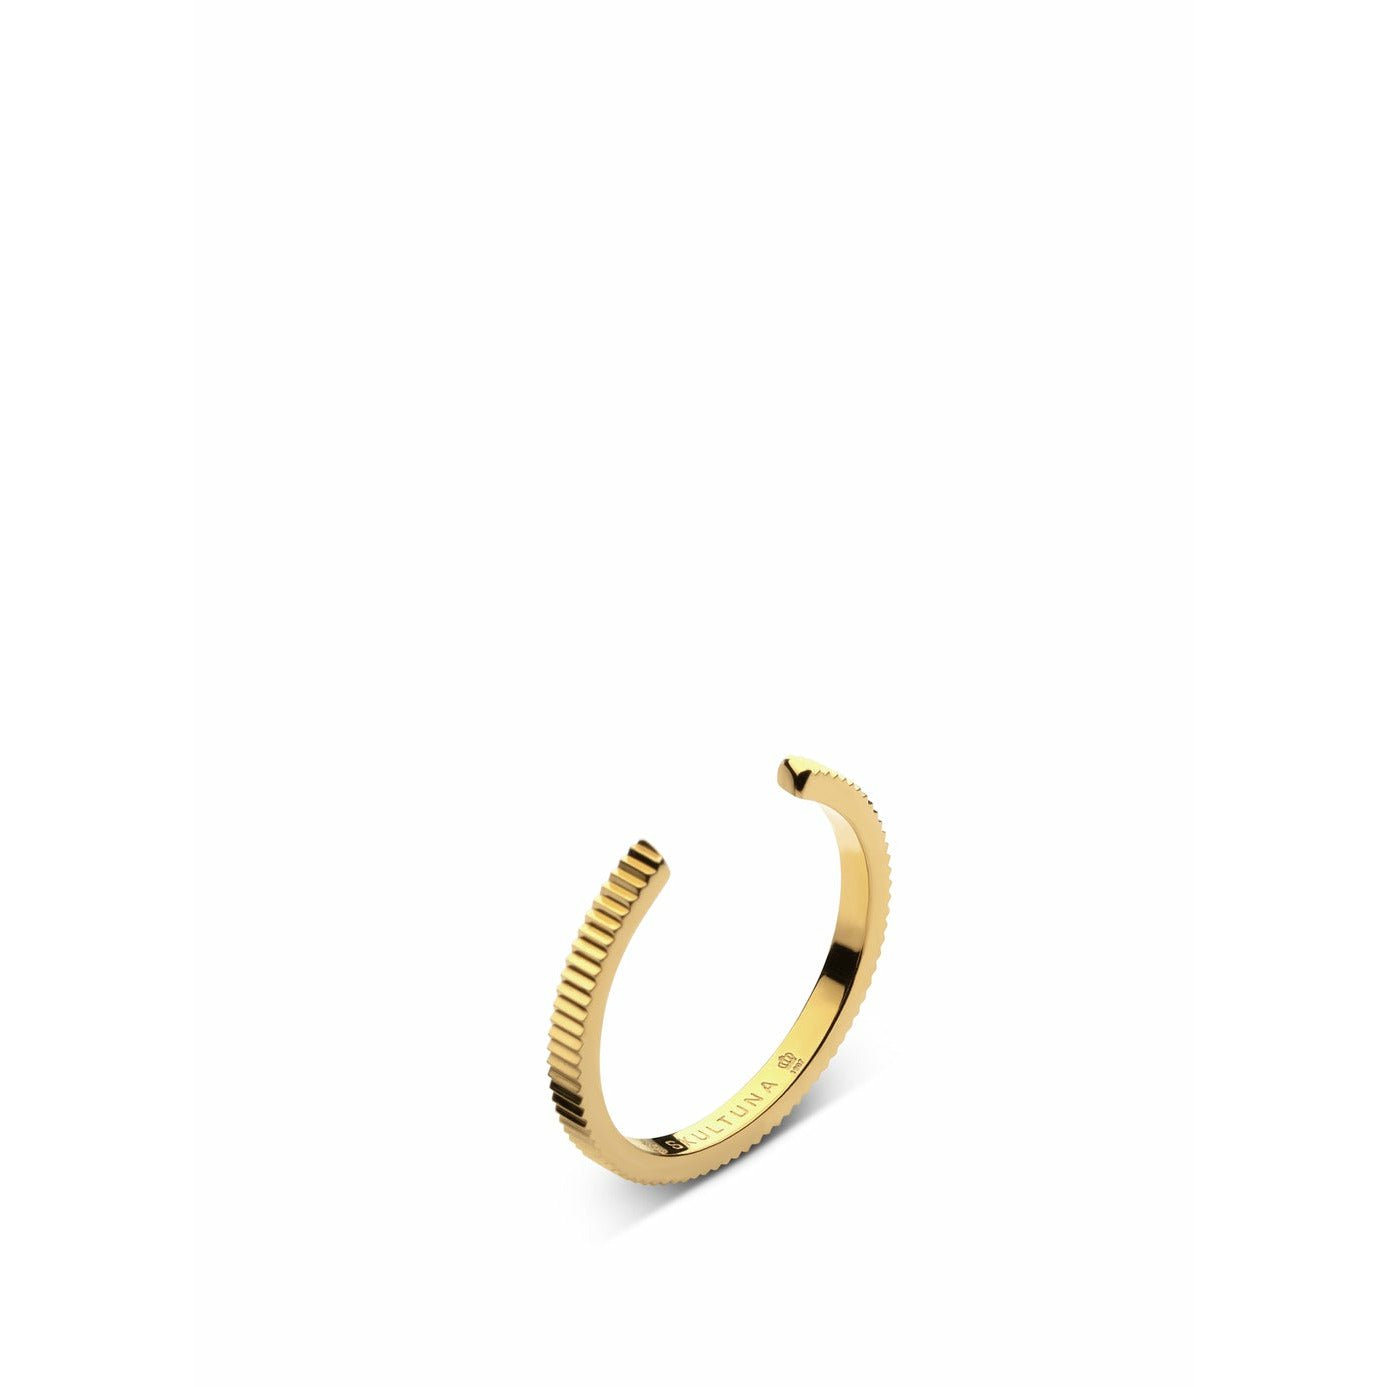 Szultuna żebrowana cienki pierścień średnia 316 L stalowa złota, Ø1,73 cm